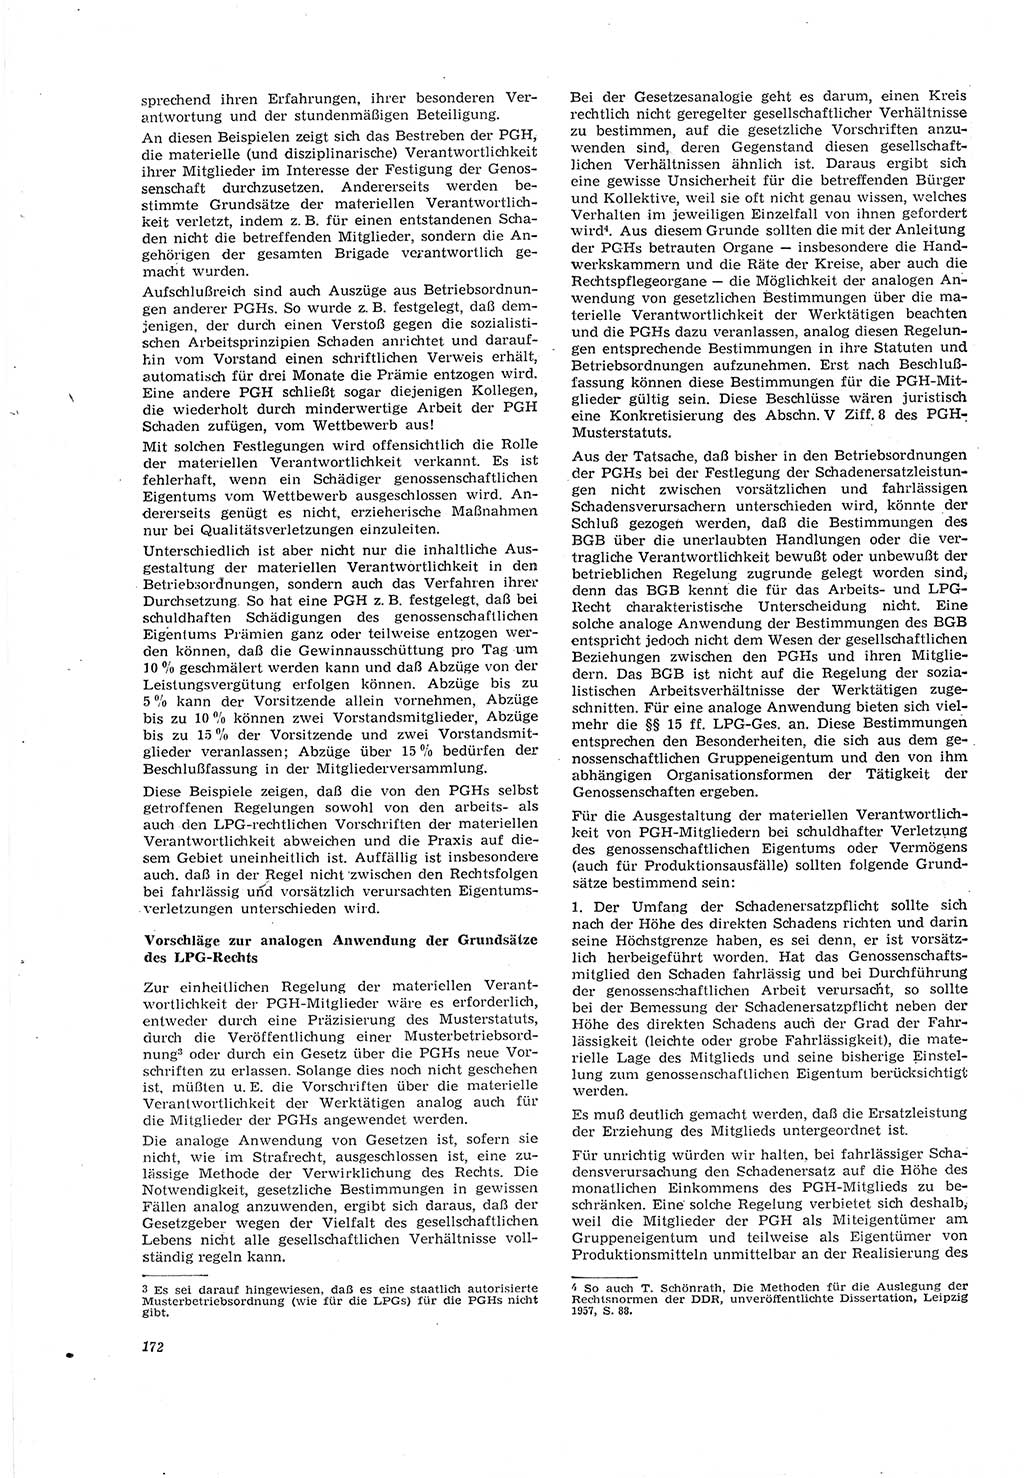 Neue Justiz (NJ), Zeitschrift für Recht und Rechtswissenschaft [Deutsche Demokratische Republik (DDR)], 20. Jahrgang 1966, Seite 172 (NJ DDR 1966, S. 172)